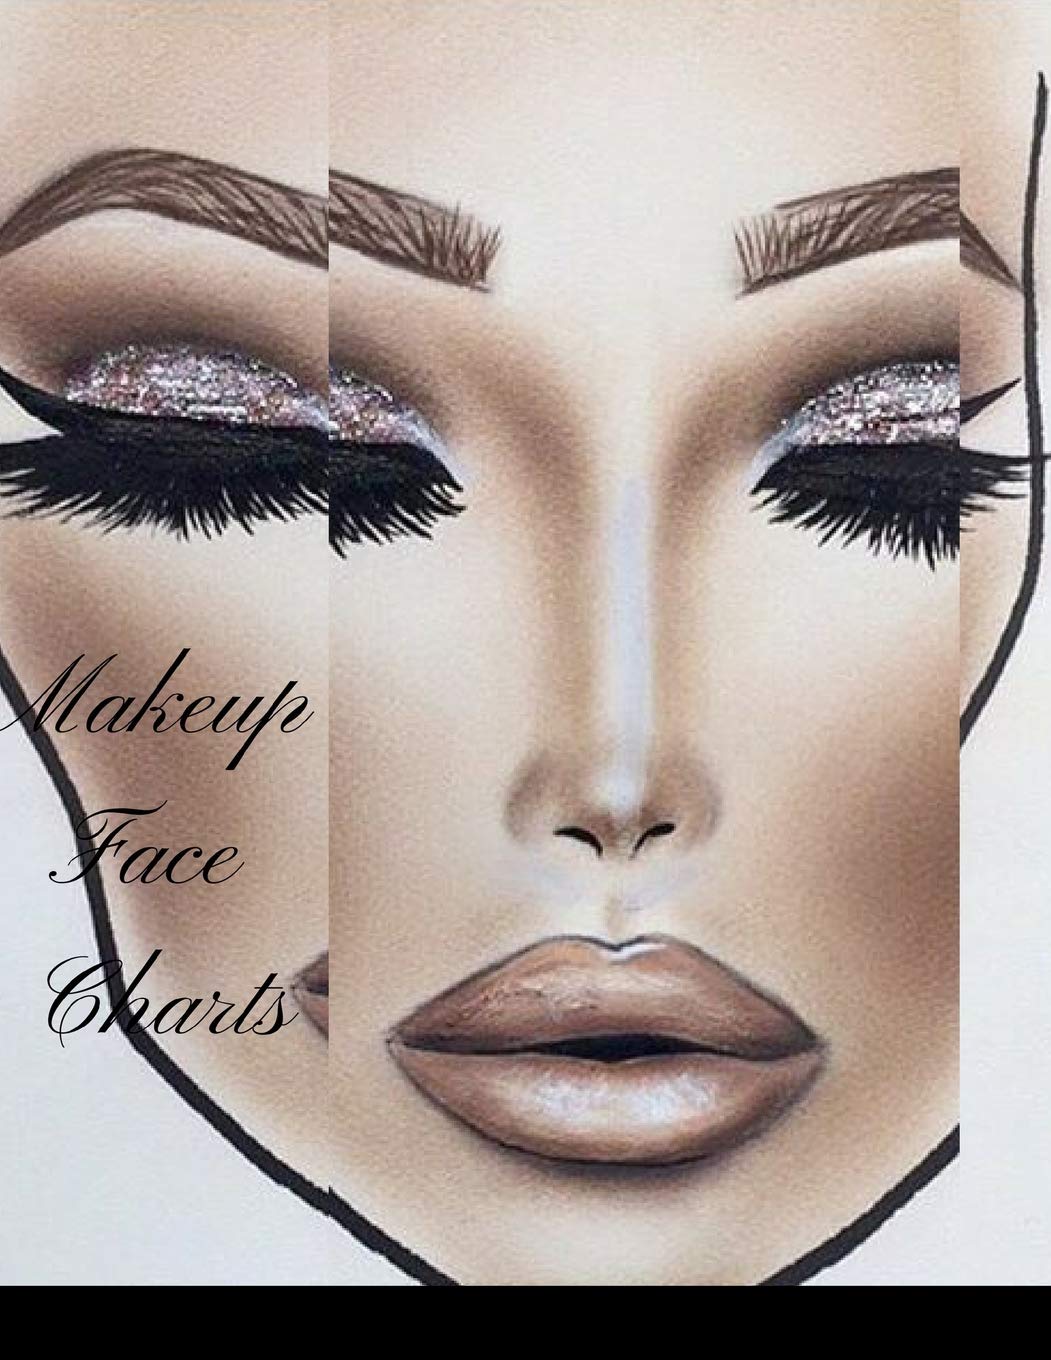 How To Draw Makeup Face Charts Makeup Vidalondon